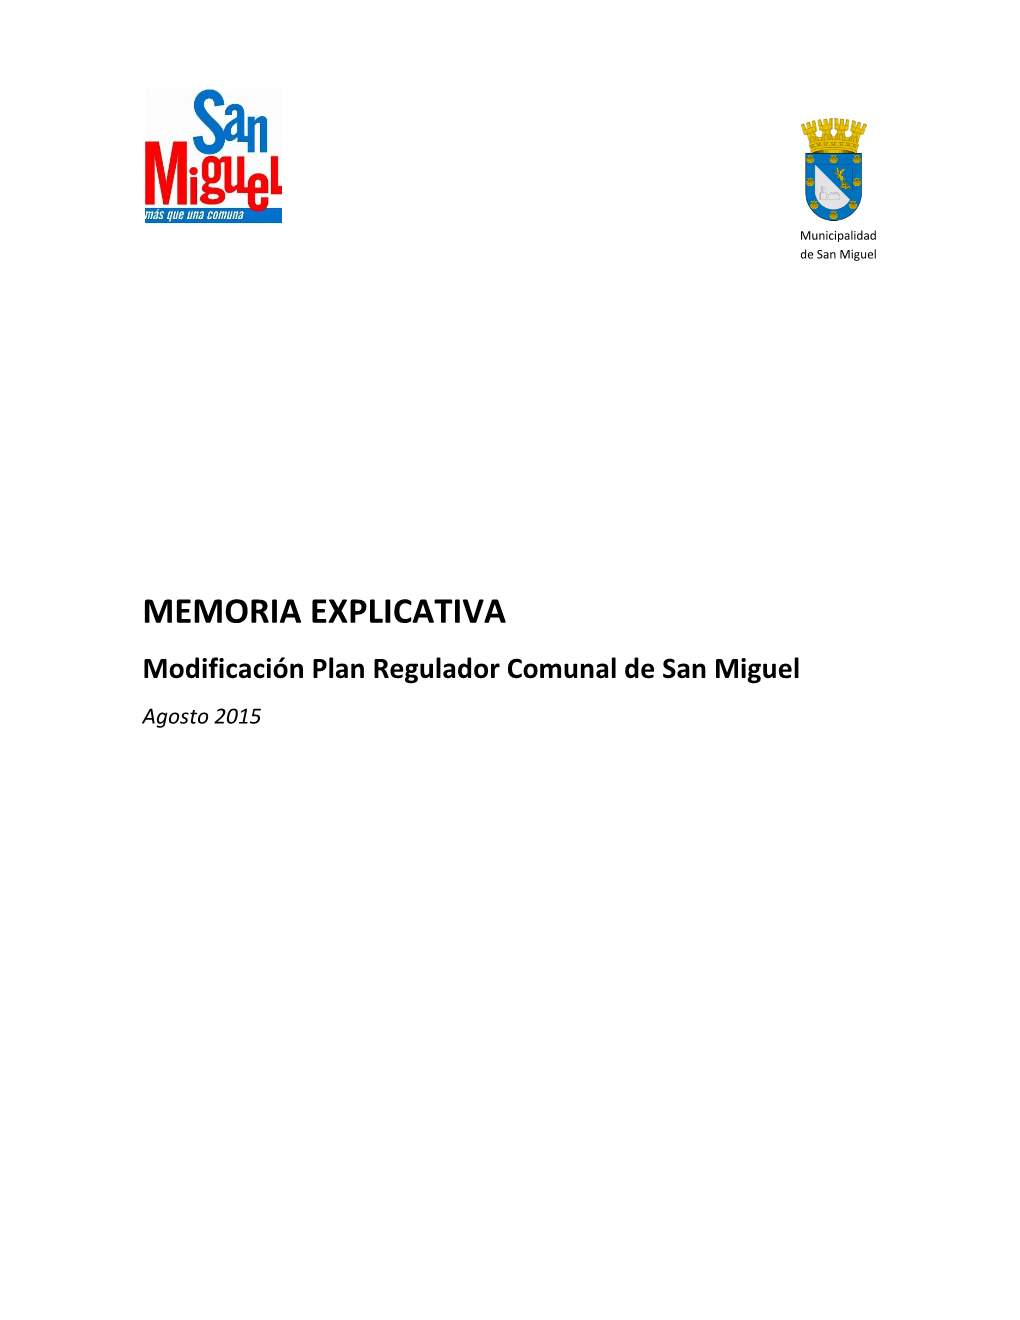 MEMORIA EXPLICATIVA Modificación Plan Regulador Comunal De San Miguel Agosto 2015